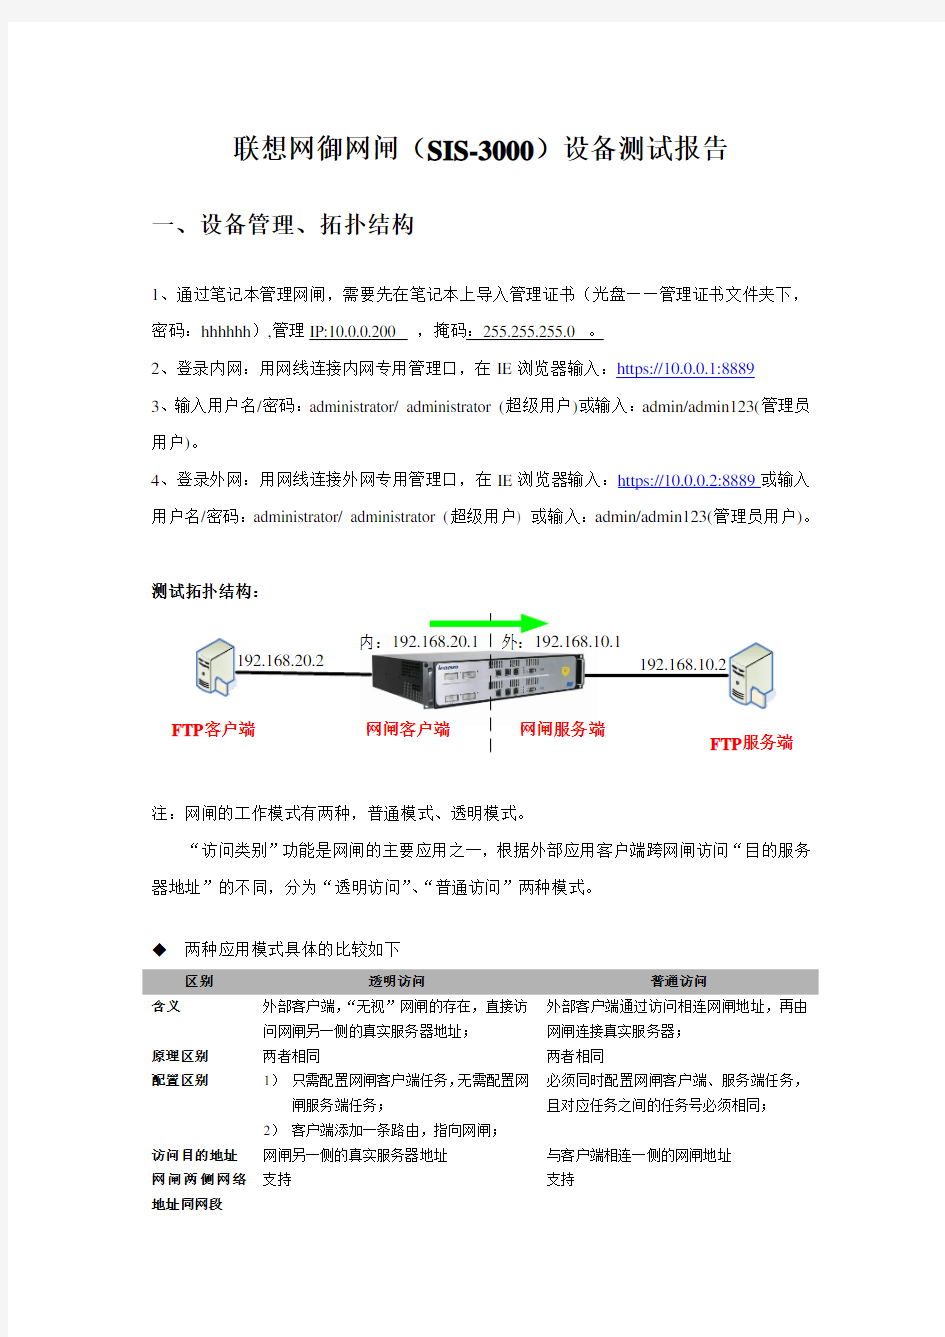 联想网御网闸(SIS-3000)配置过程